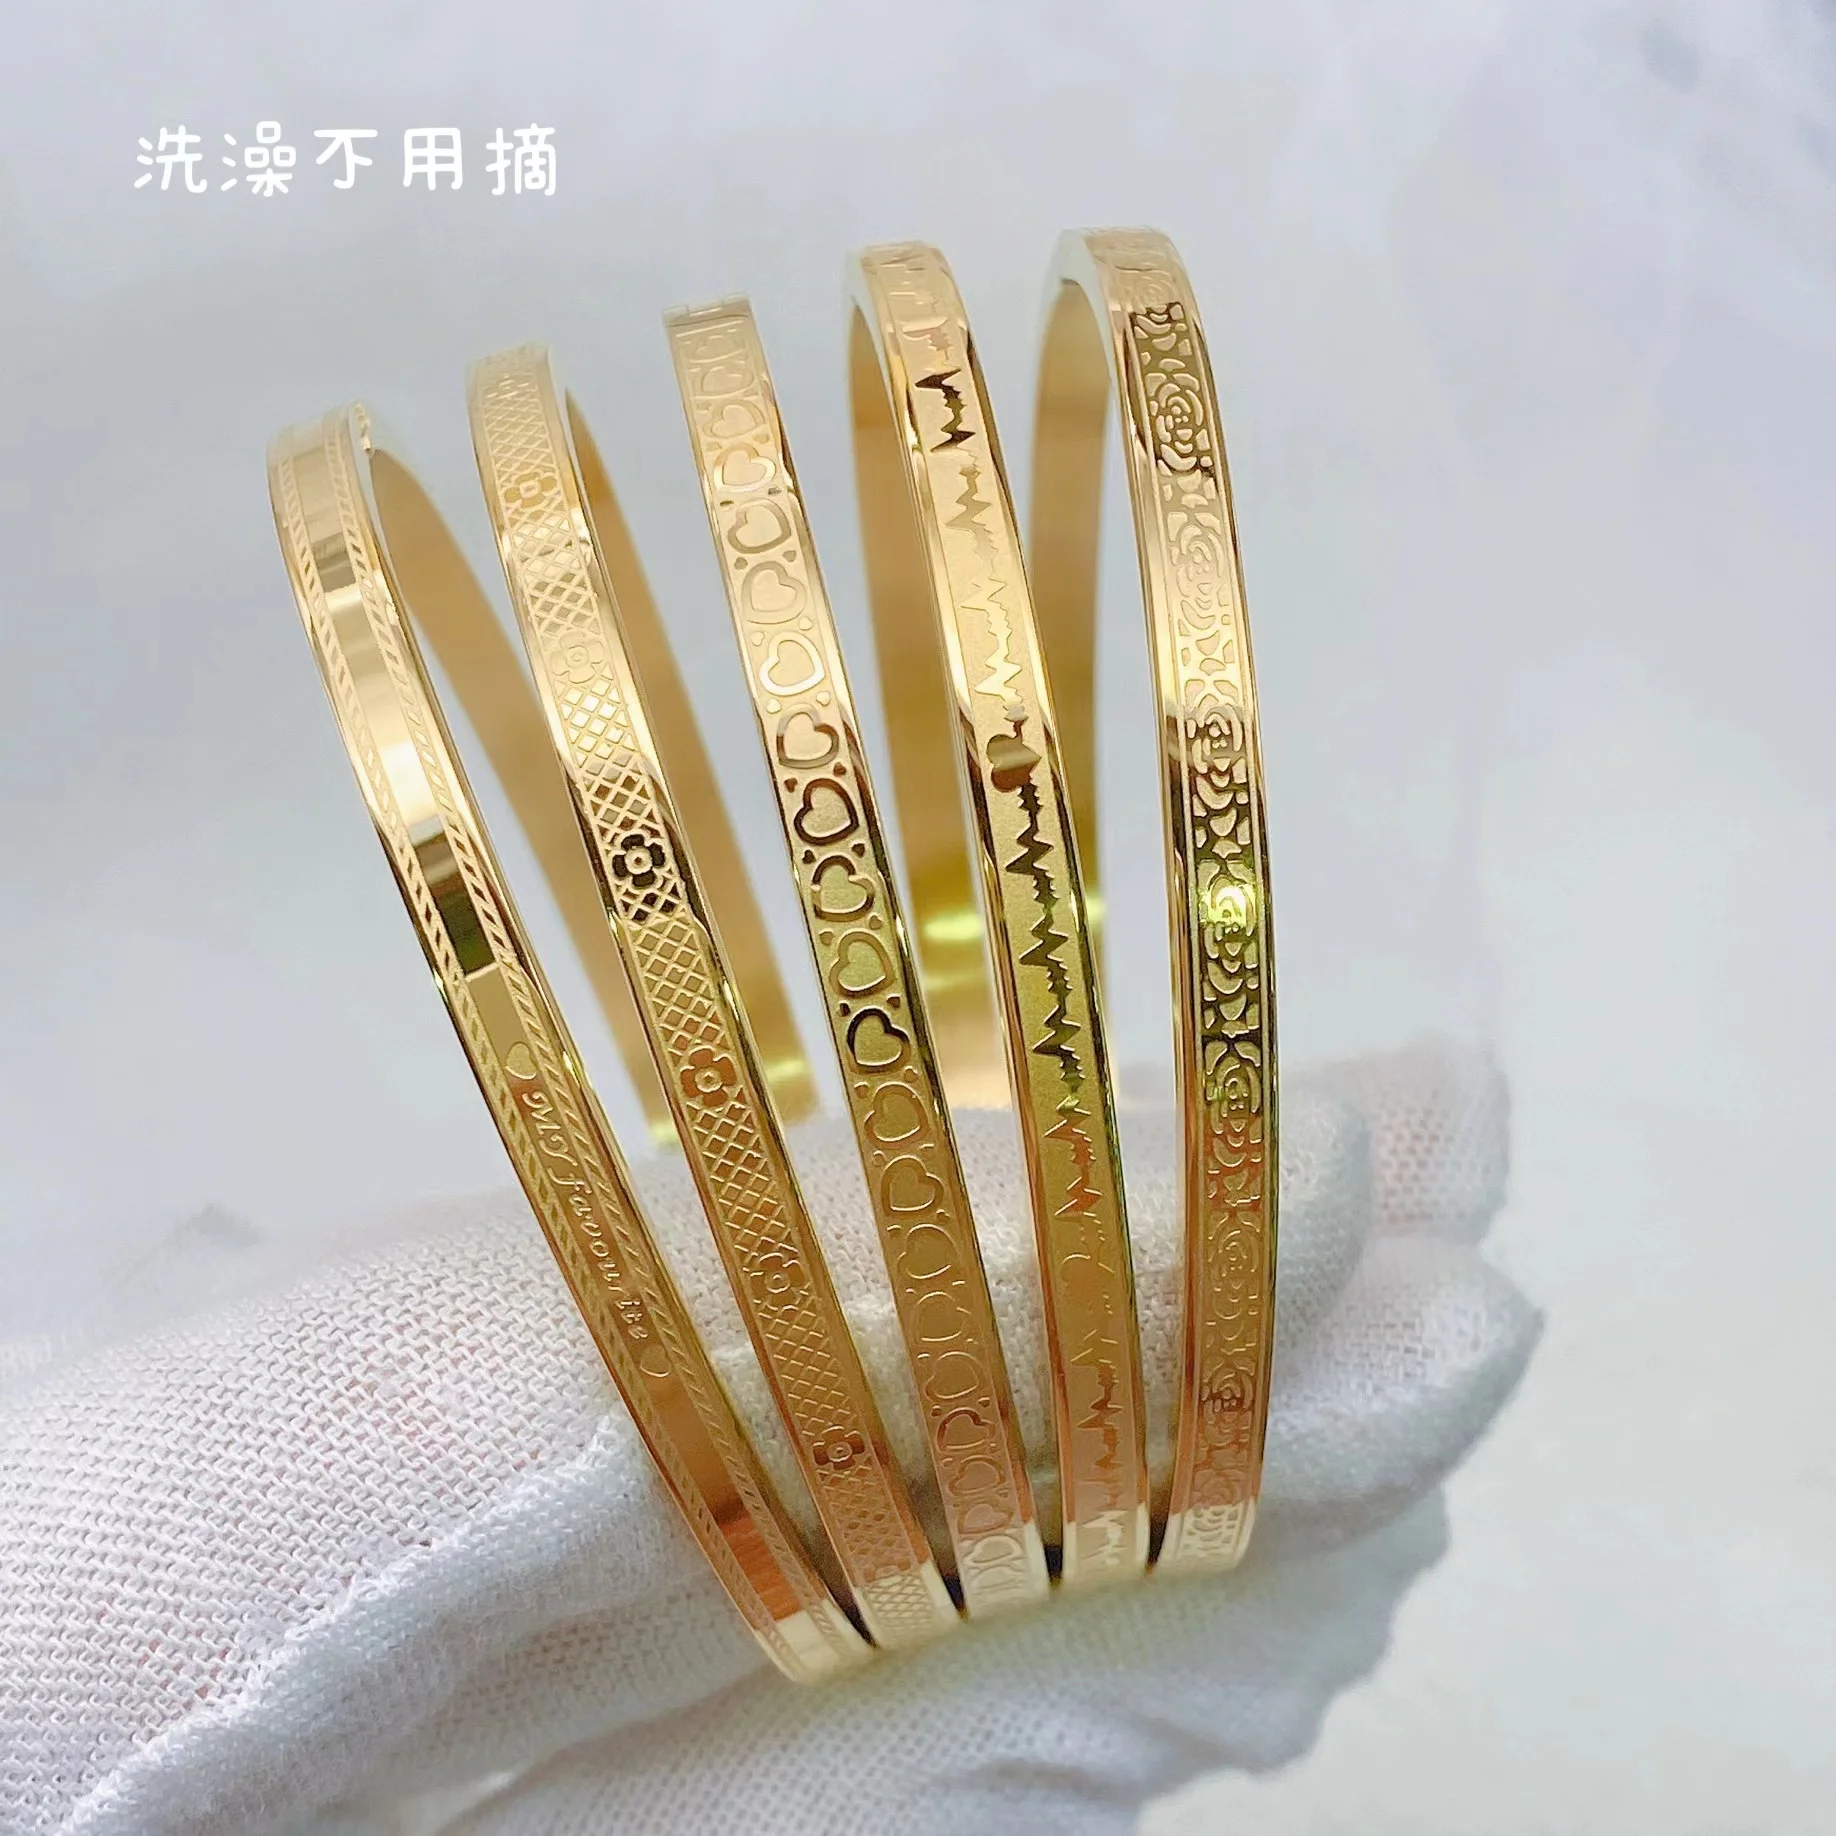 IQPC Новый женский браслет классического модного дизайна из нержавеющей стали и золота, подходящий для повседневной носки женщин, подарок на годовщину